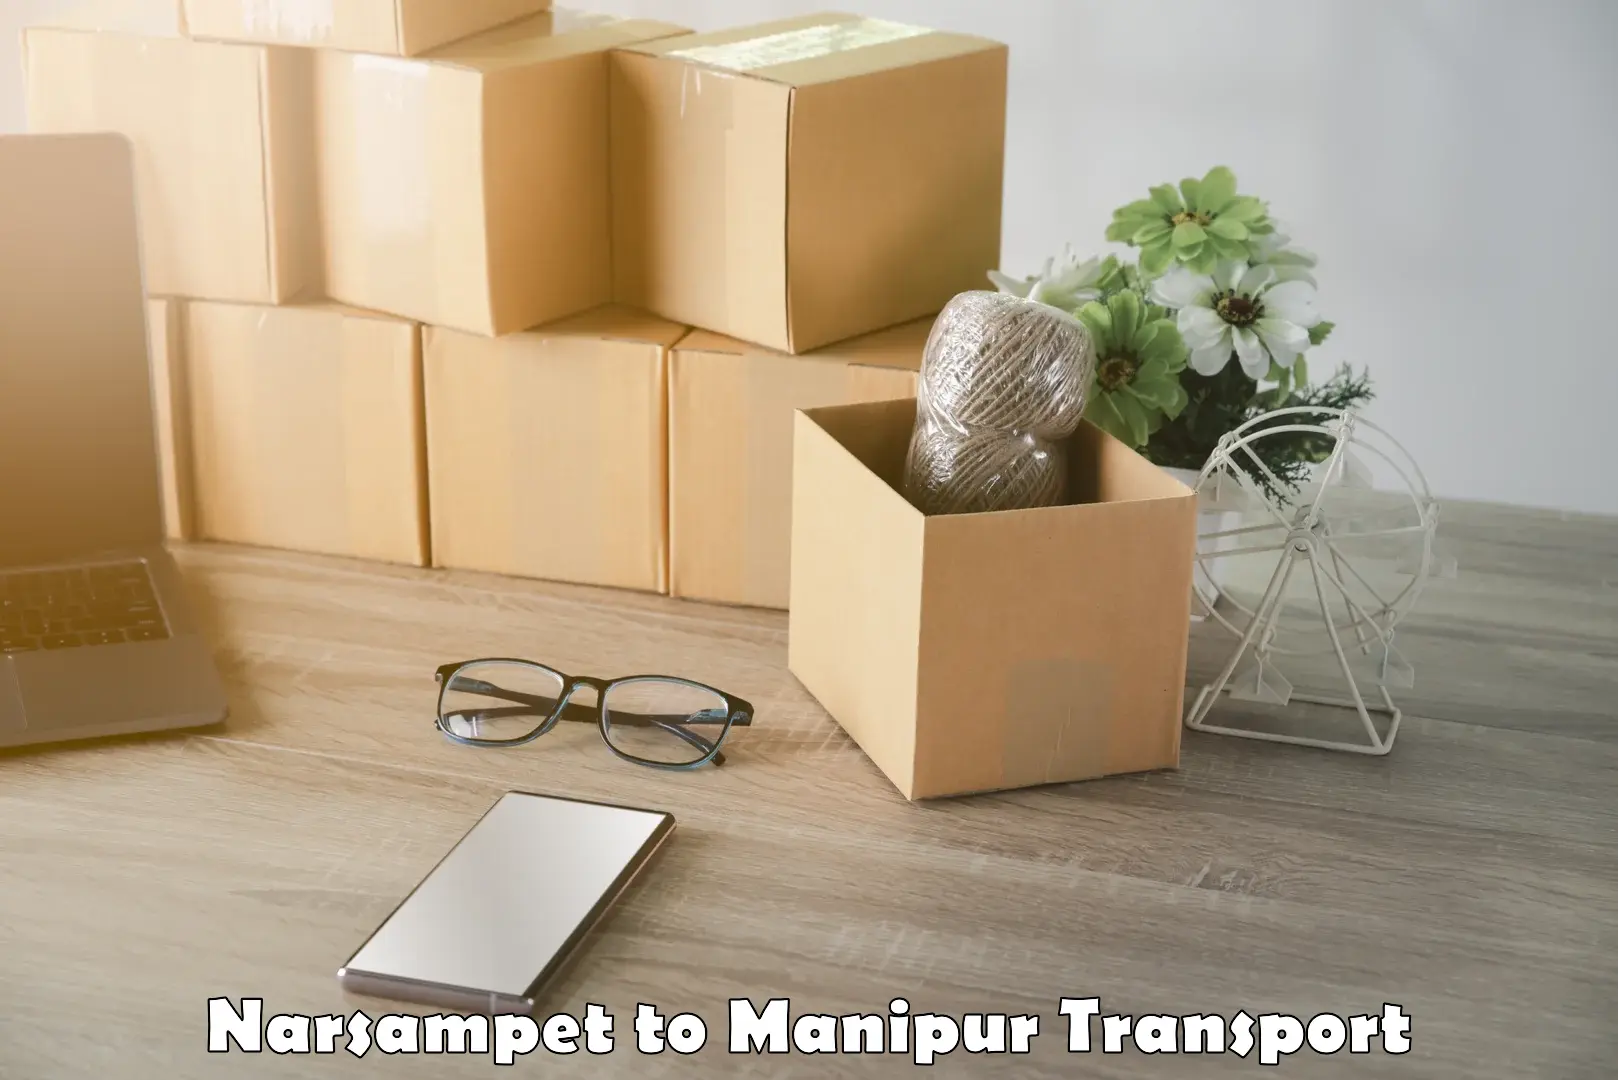 Furniture transport service Narsampet to Manipur